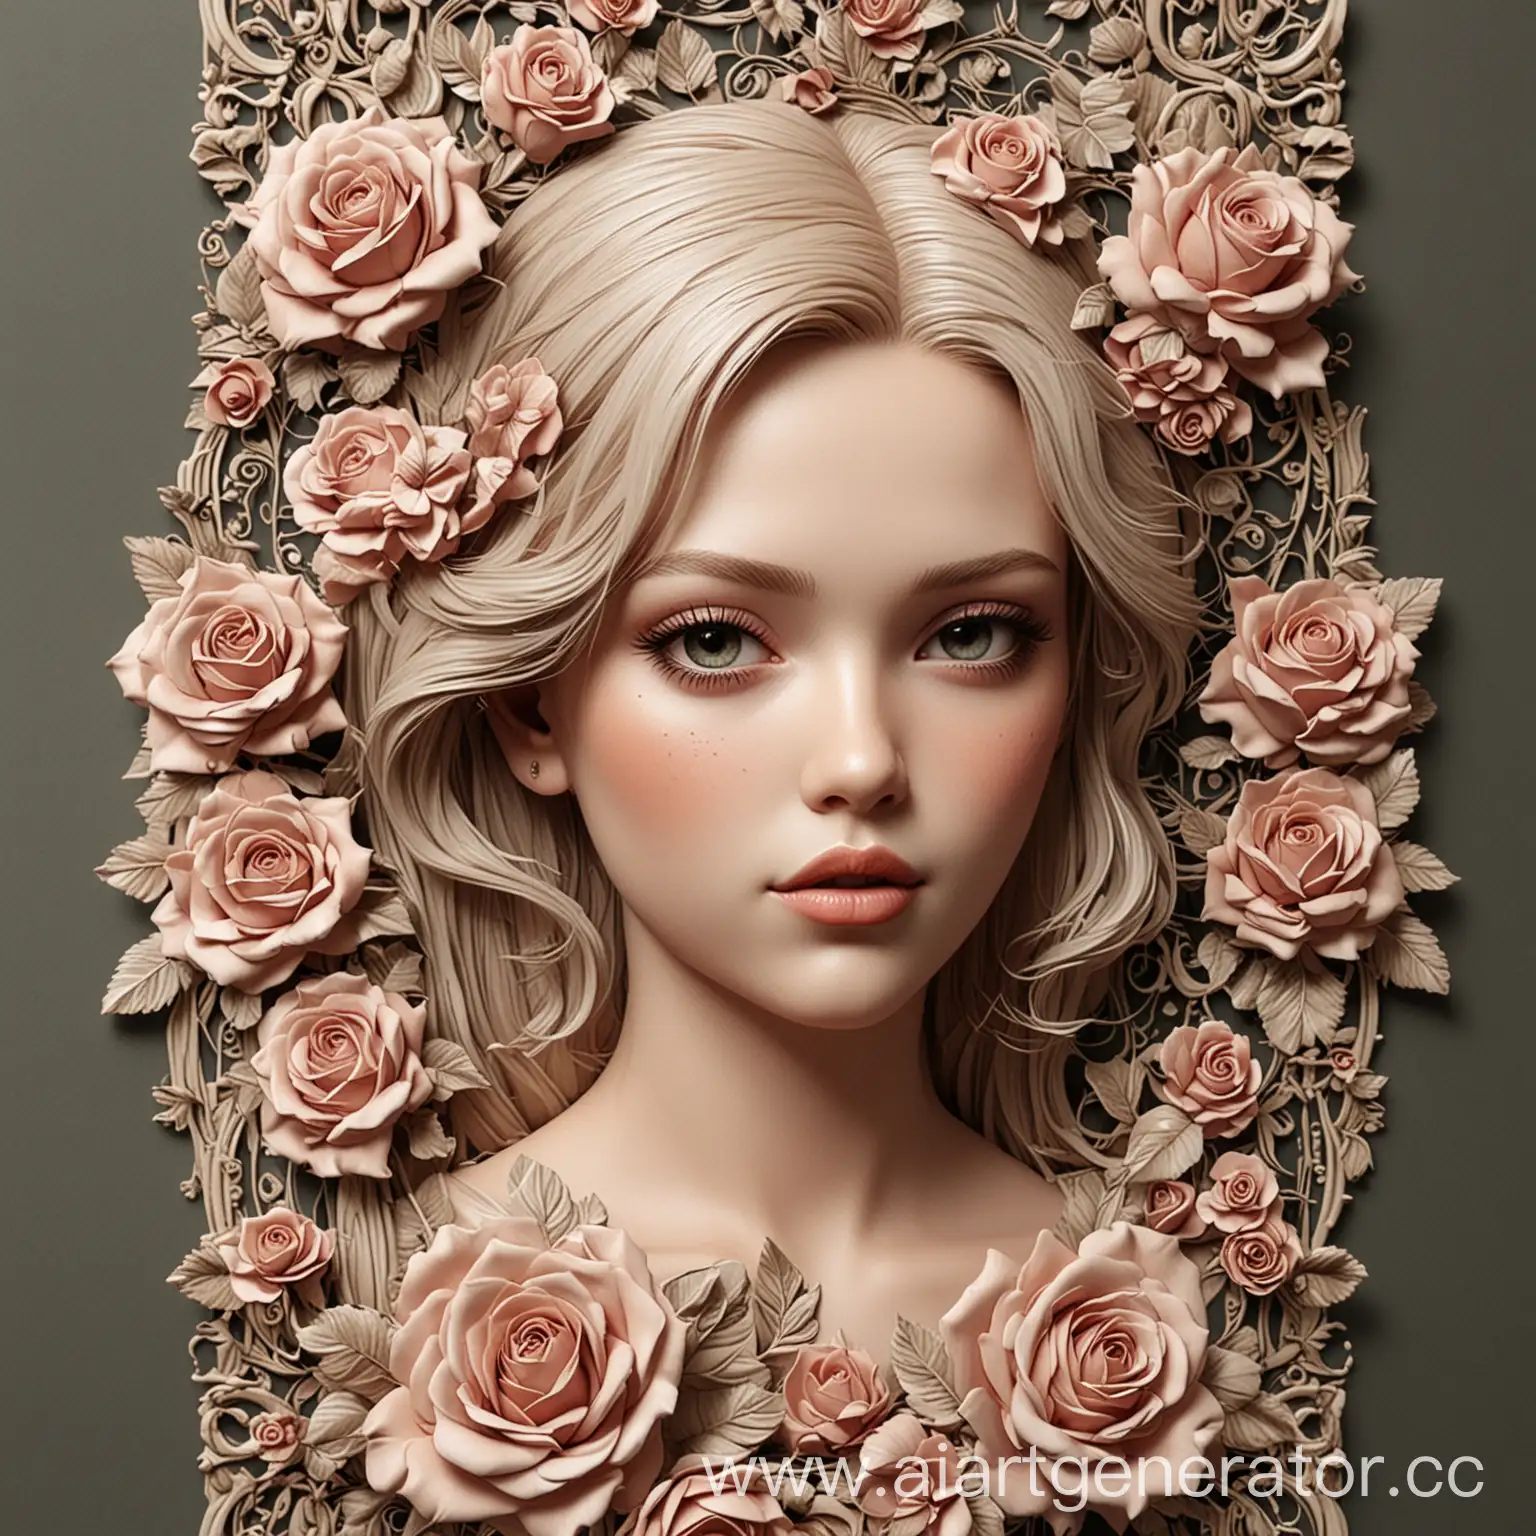 вокруг этой девушки создать орнамент  из узоров и цветков роз  в Формат е 2D. размером 120 мм на 600 мм. Сходство с портретом 100% 